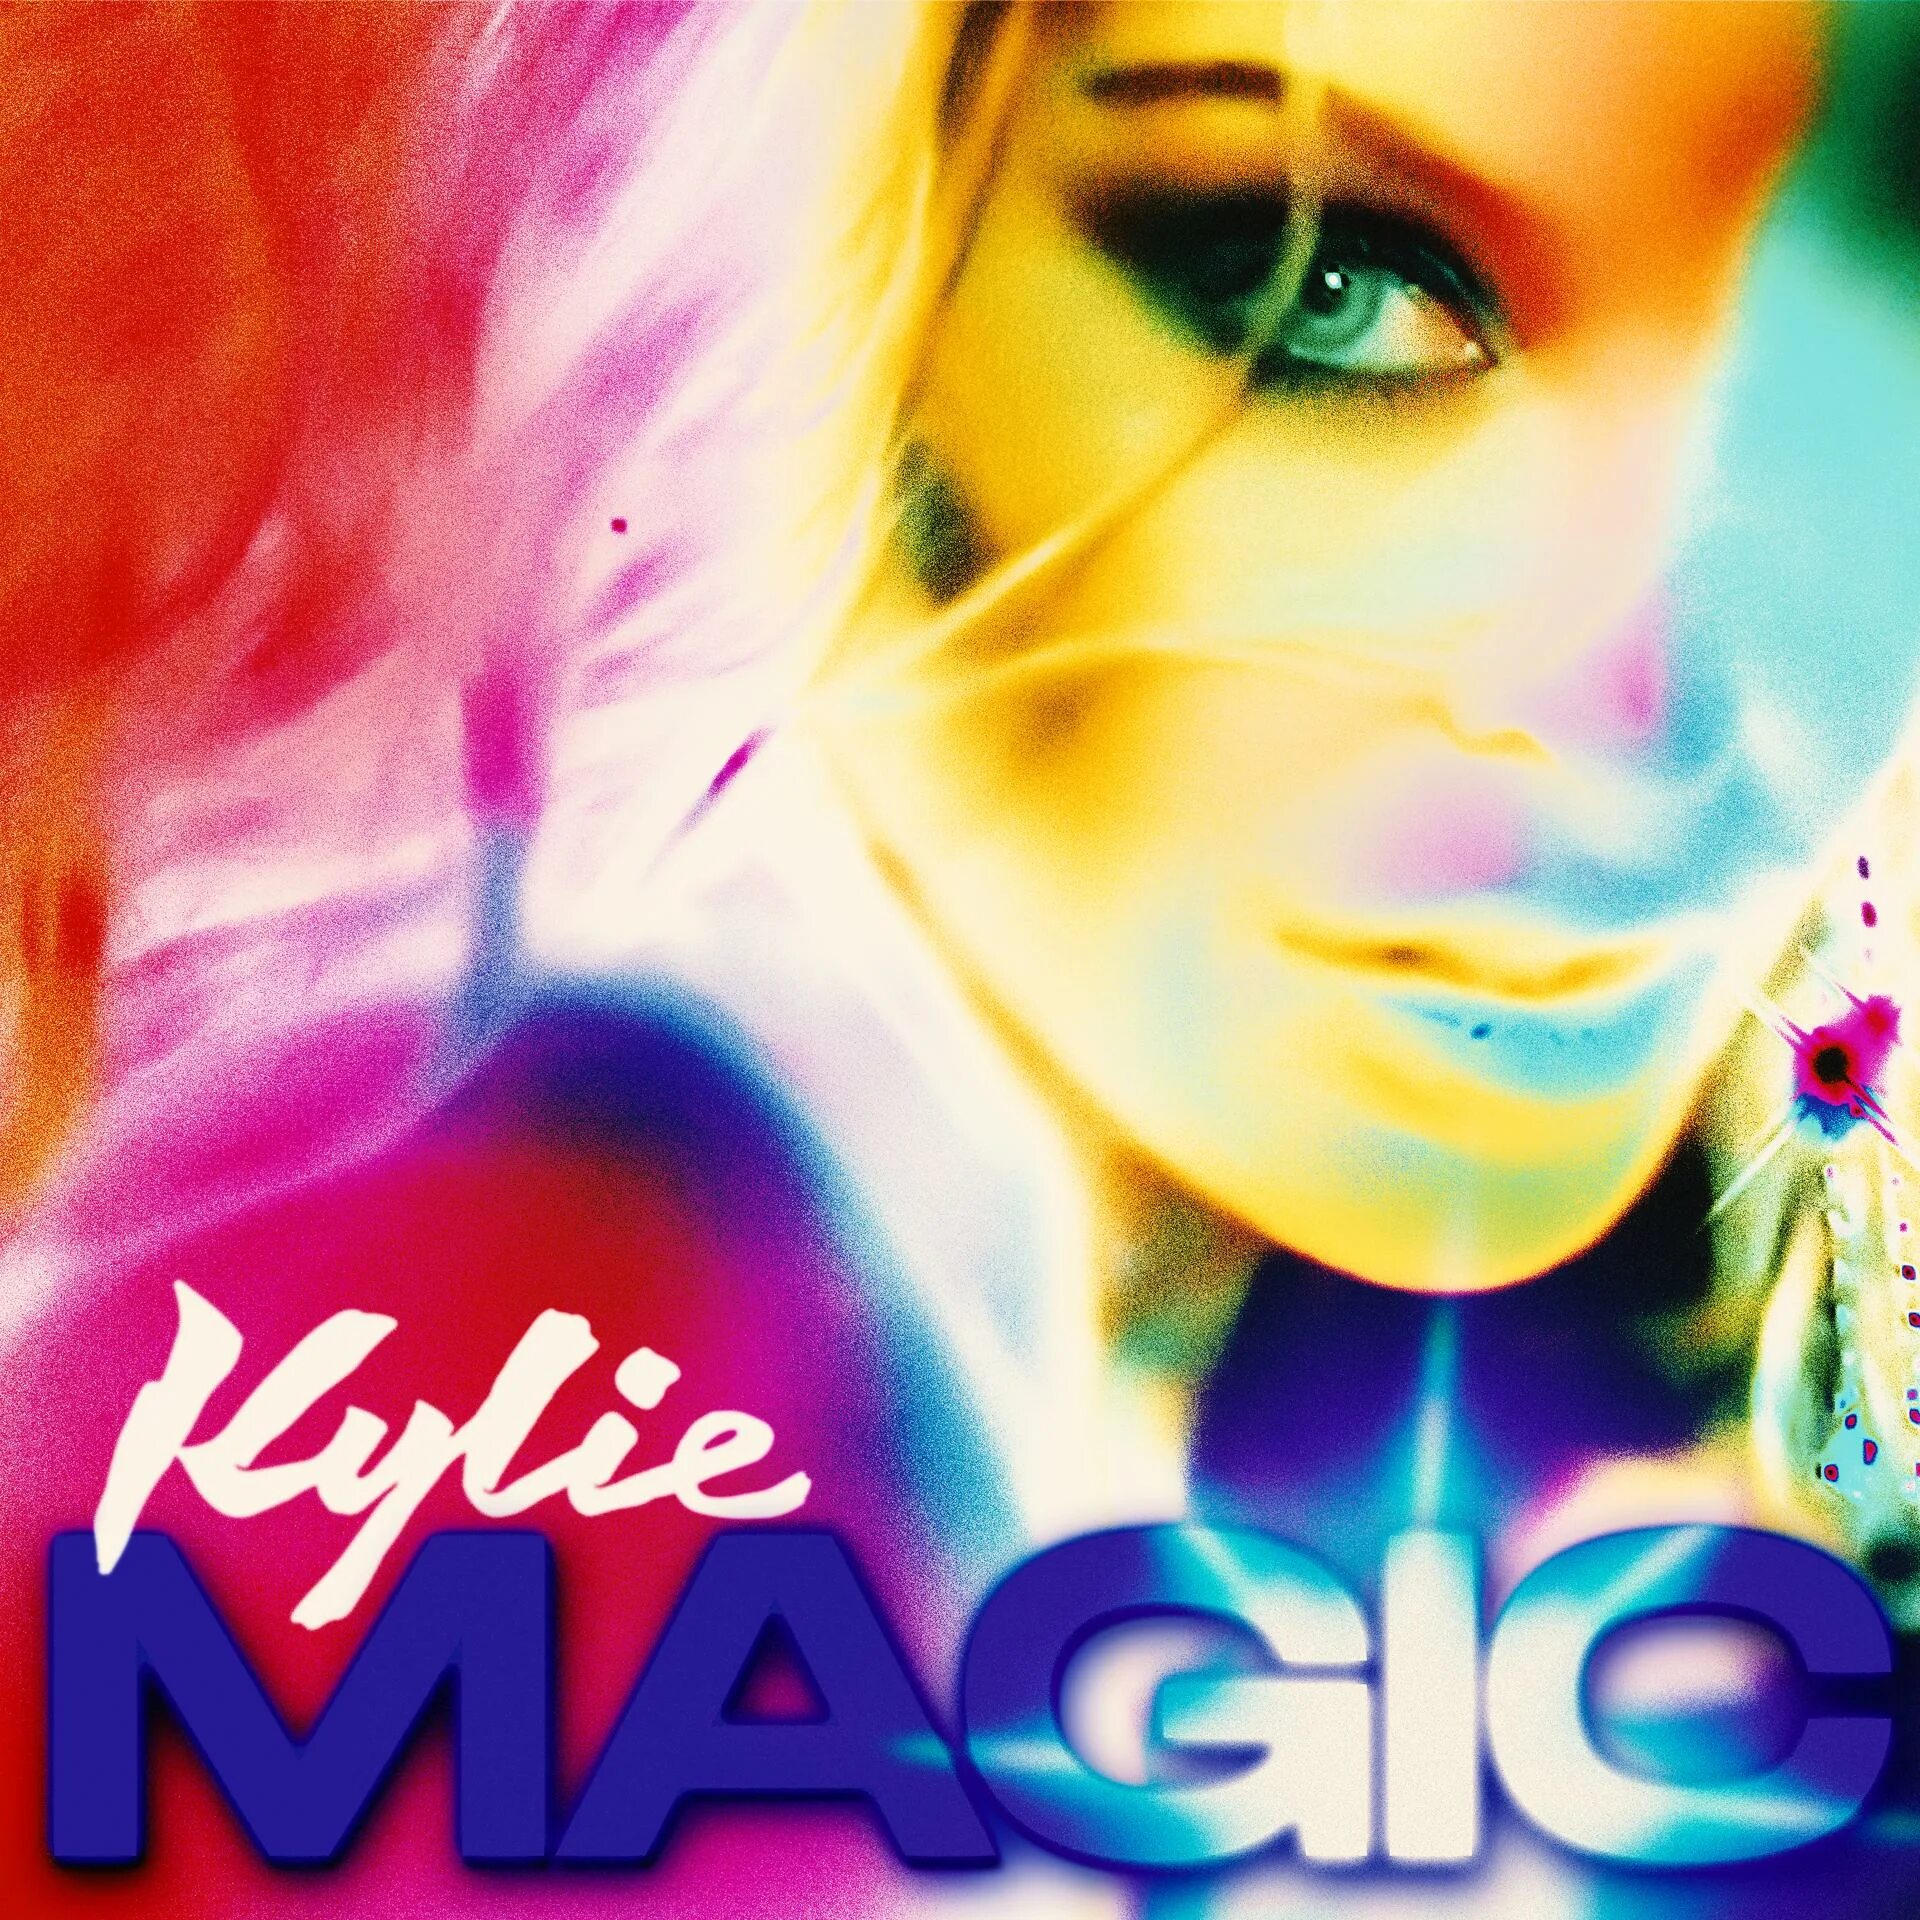 Kylie disco. Kylie Minogue Disco 2020. Kylie Minogue Magic. Minogue Kylie "Disco".